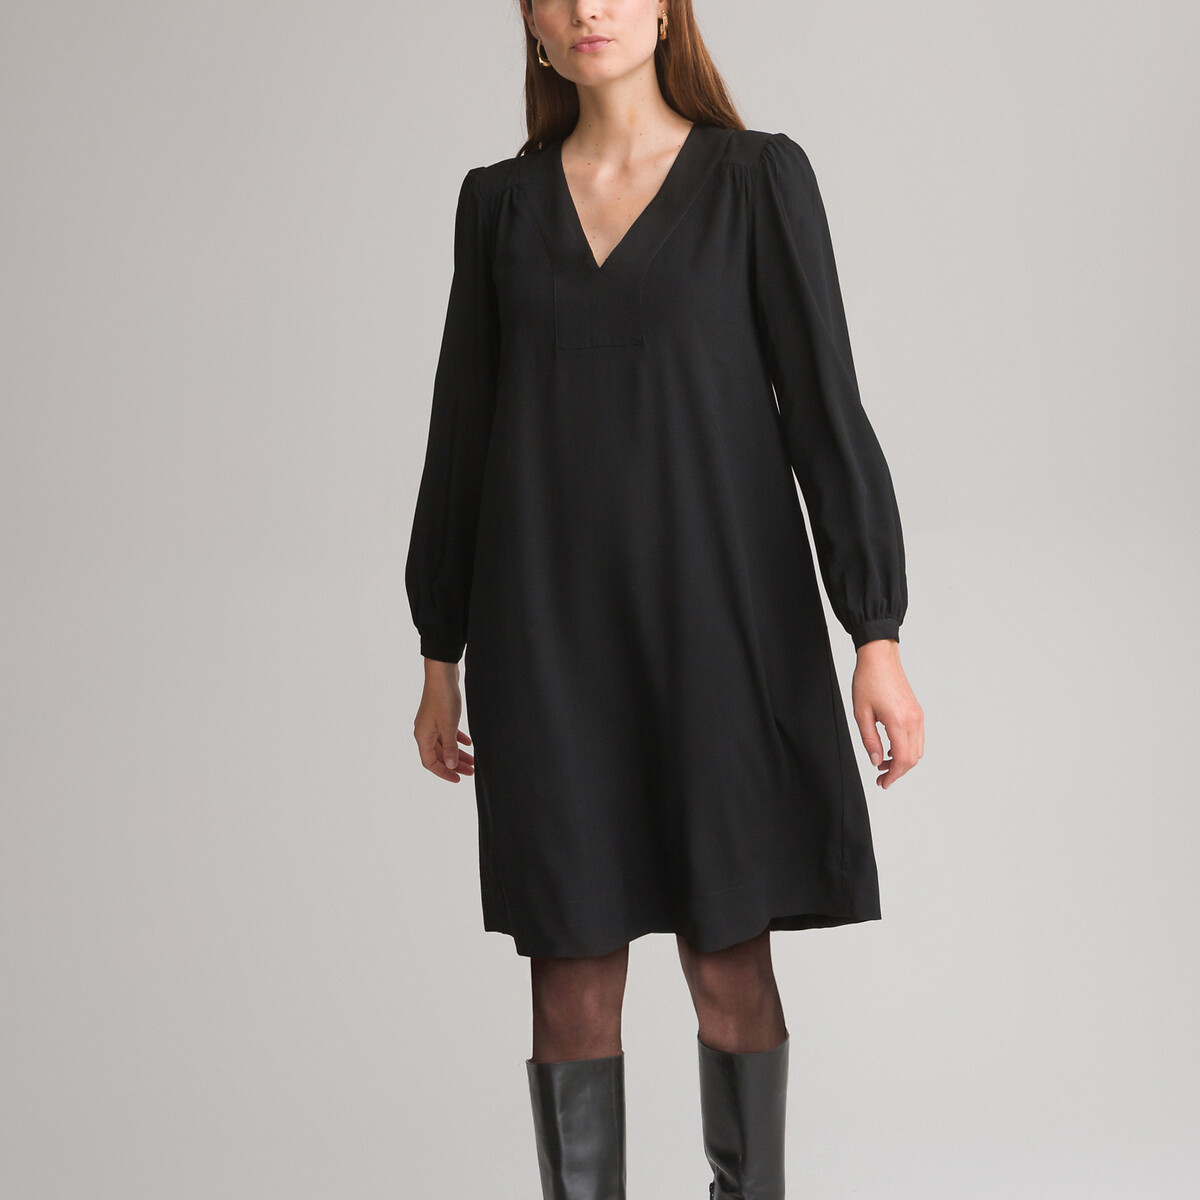 Платье-миди Расклешенное 44 черный LaRedoute, размер 44 - фото 1